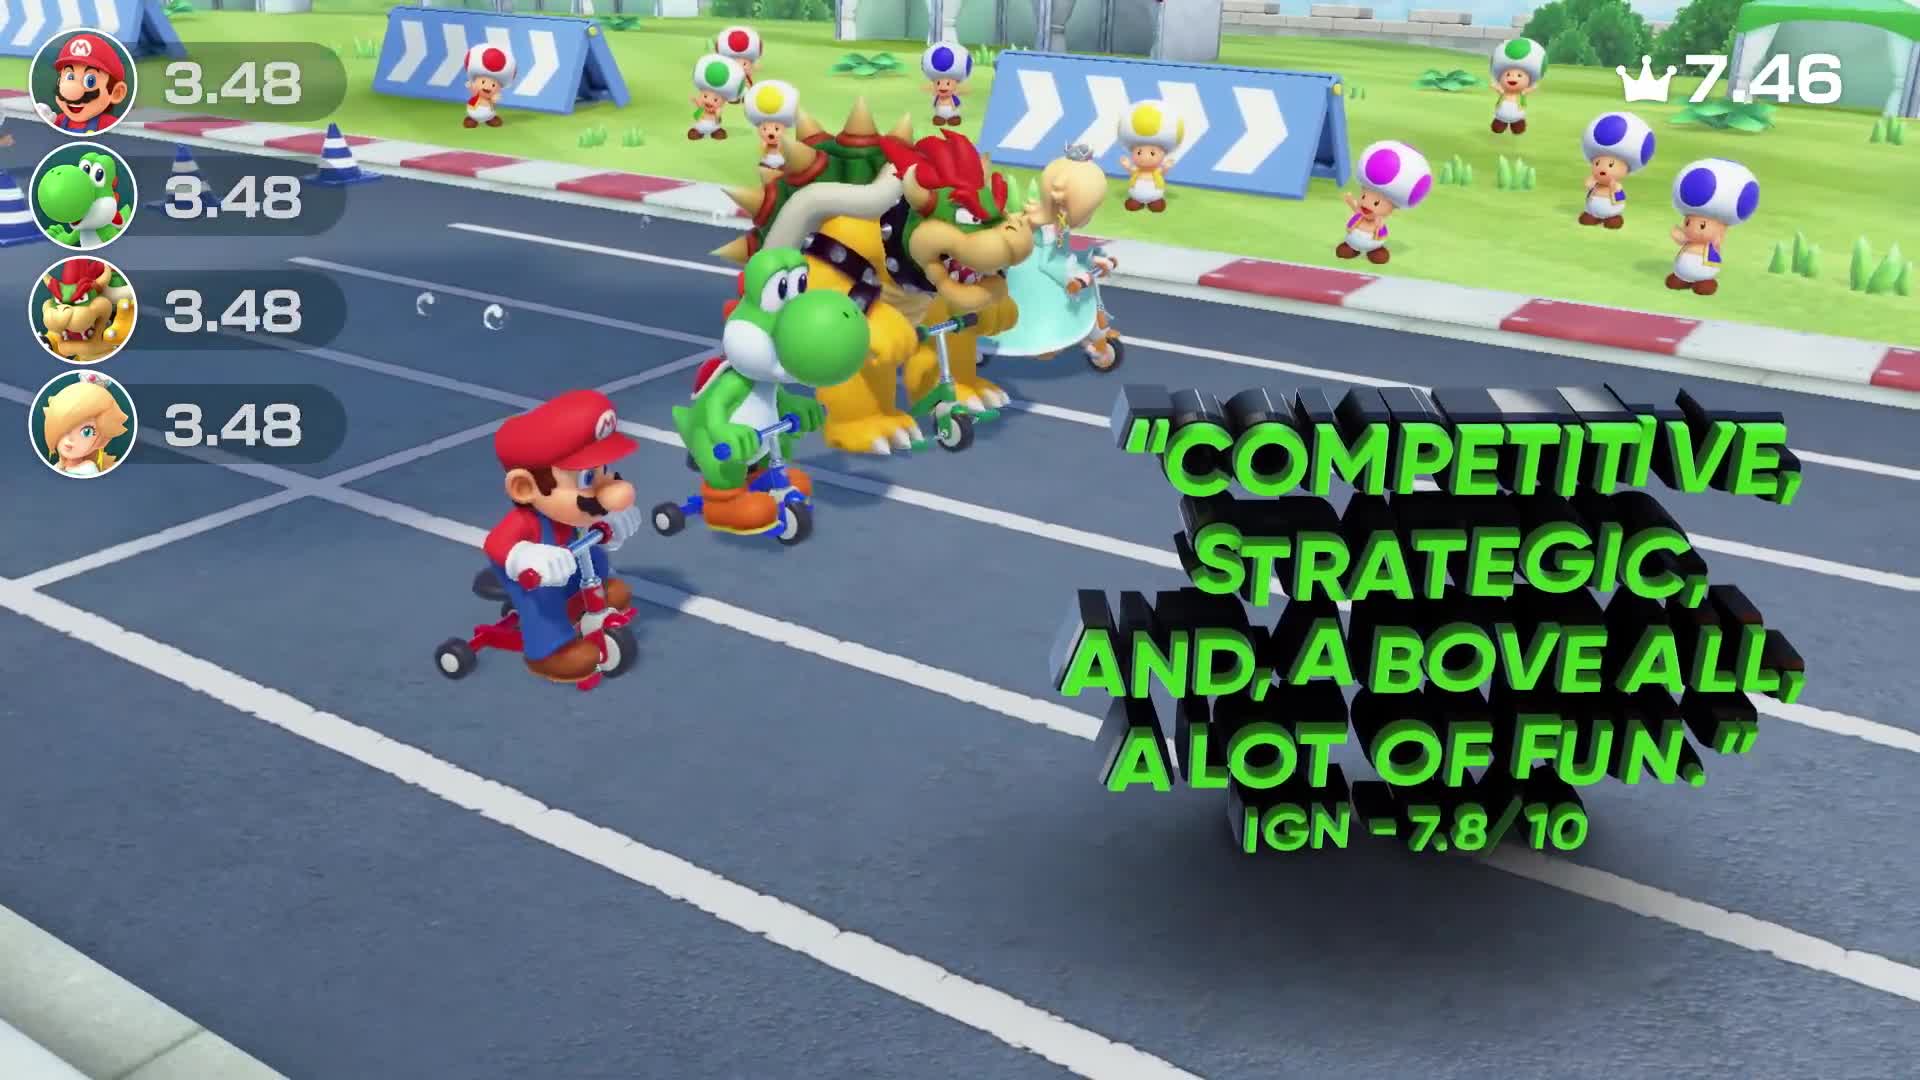 Super Mario Party - Accolades Trailer